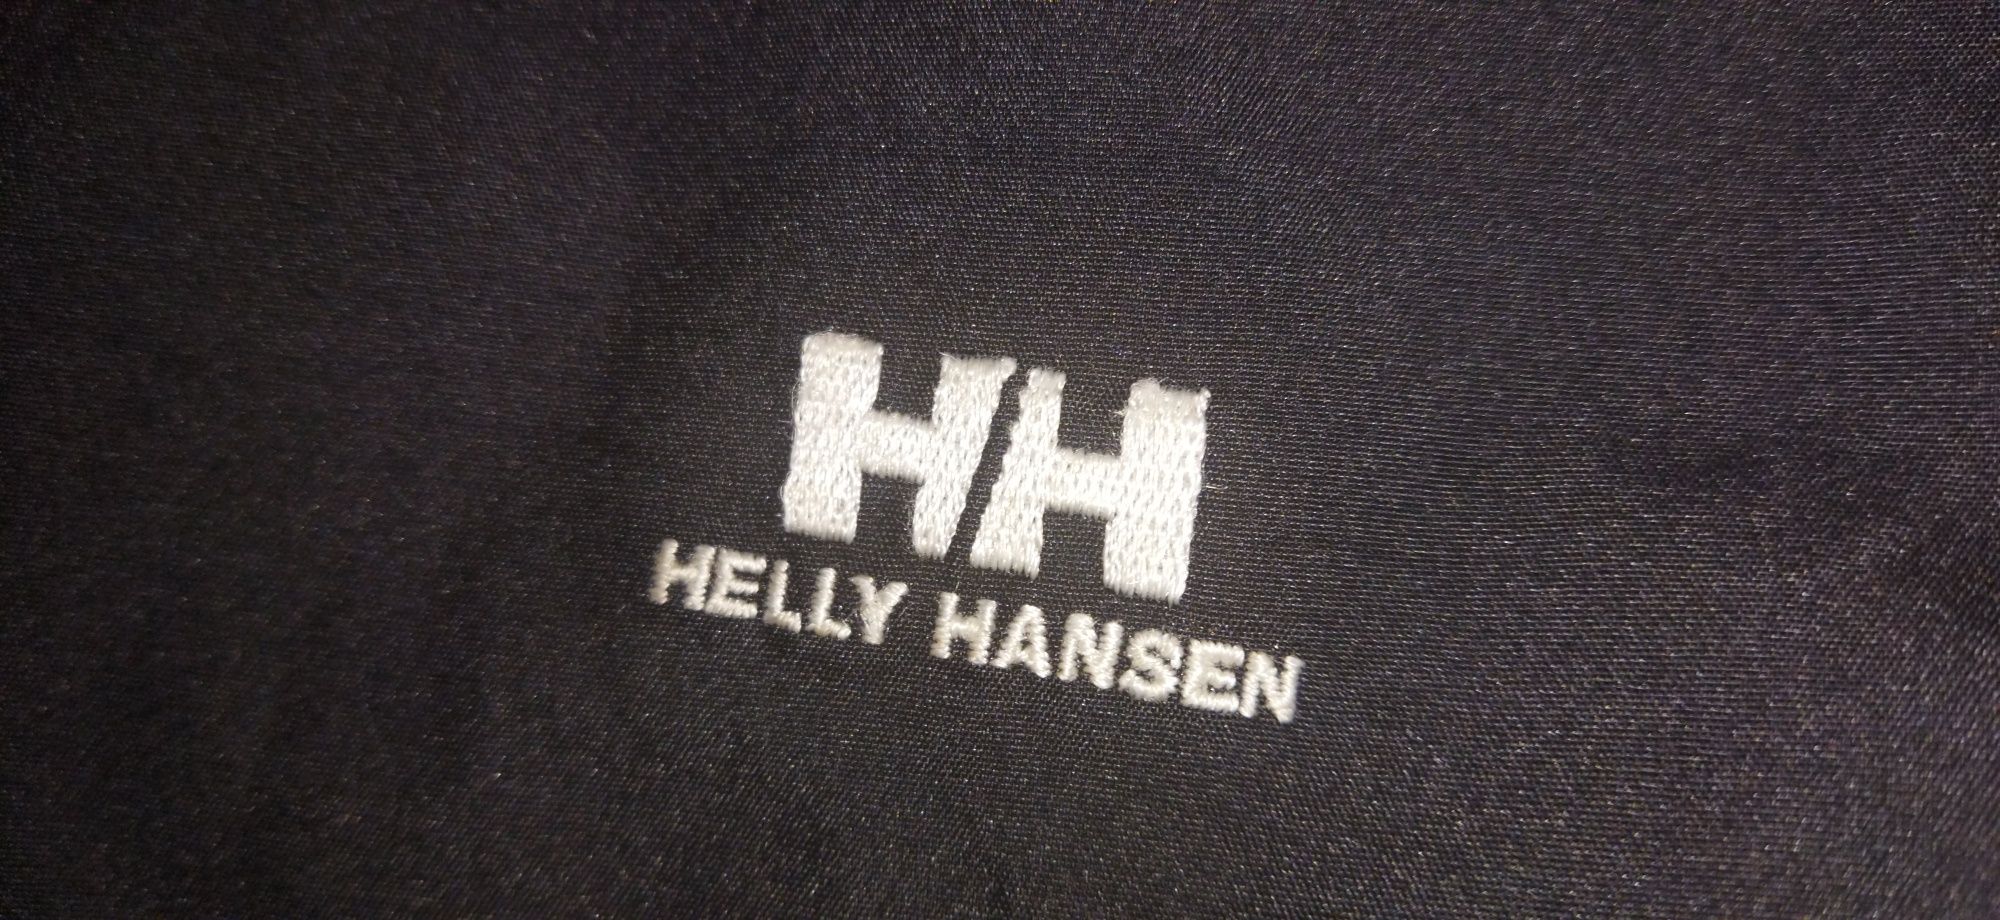 Продам штаны от Helly Hansen